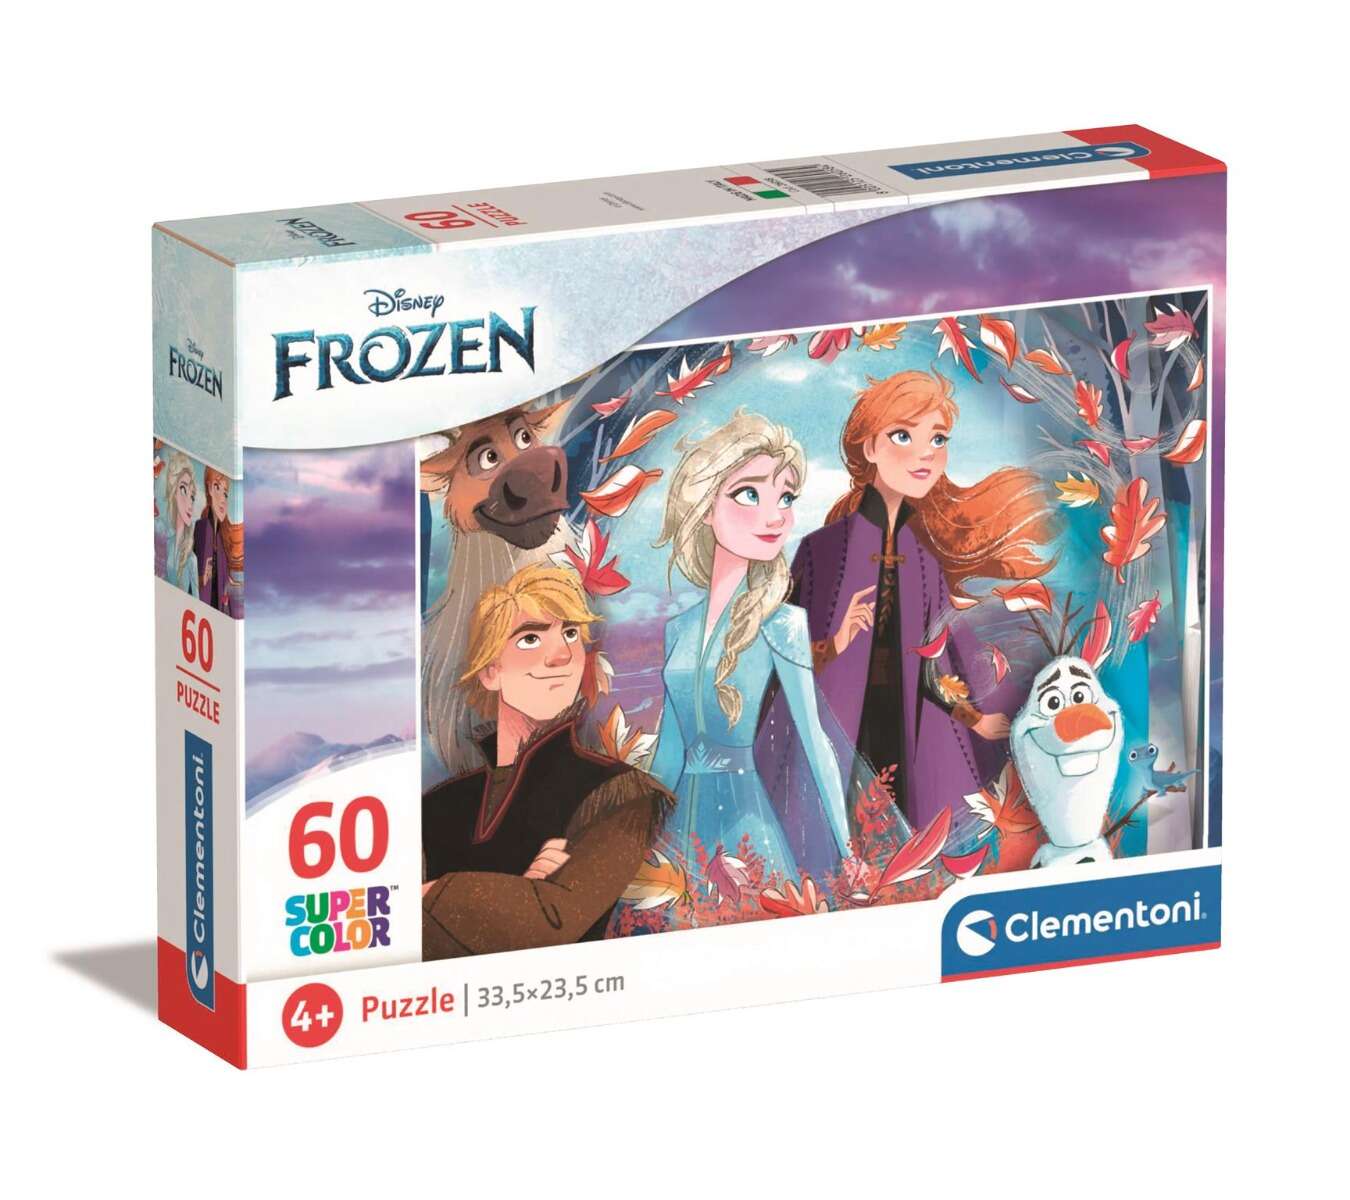 Puzzle Clementoni Disney Frozen 2, 60 piese